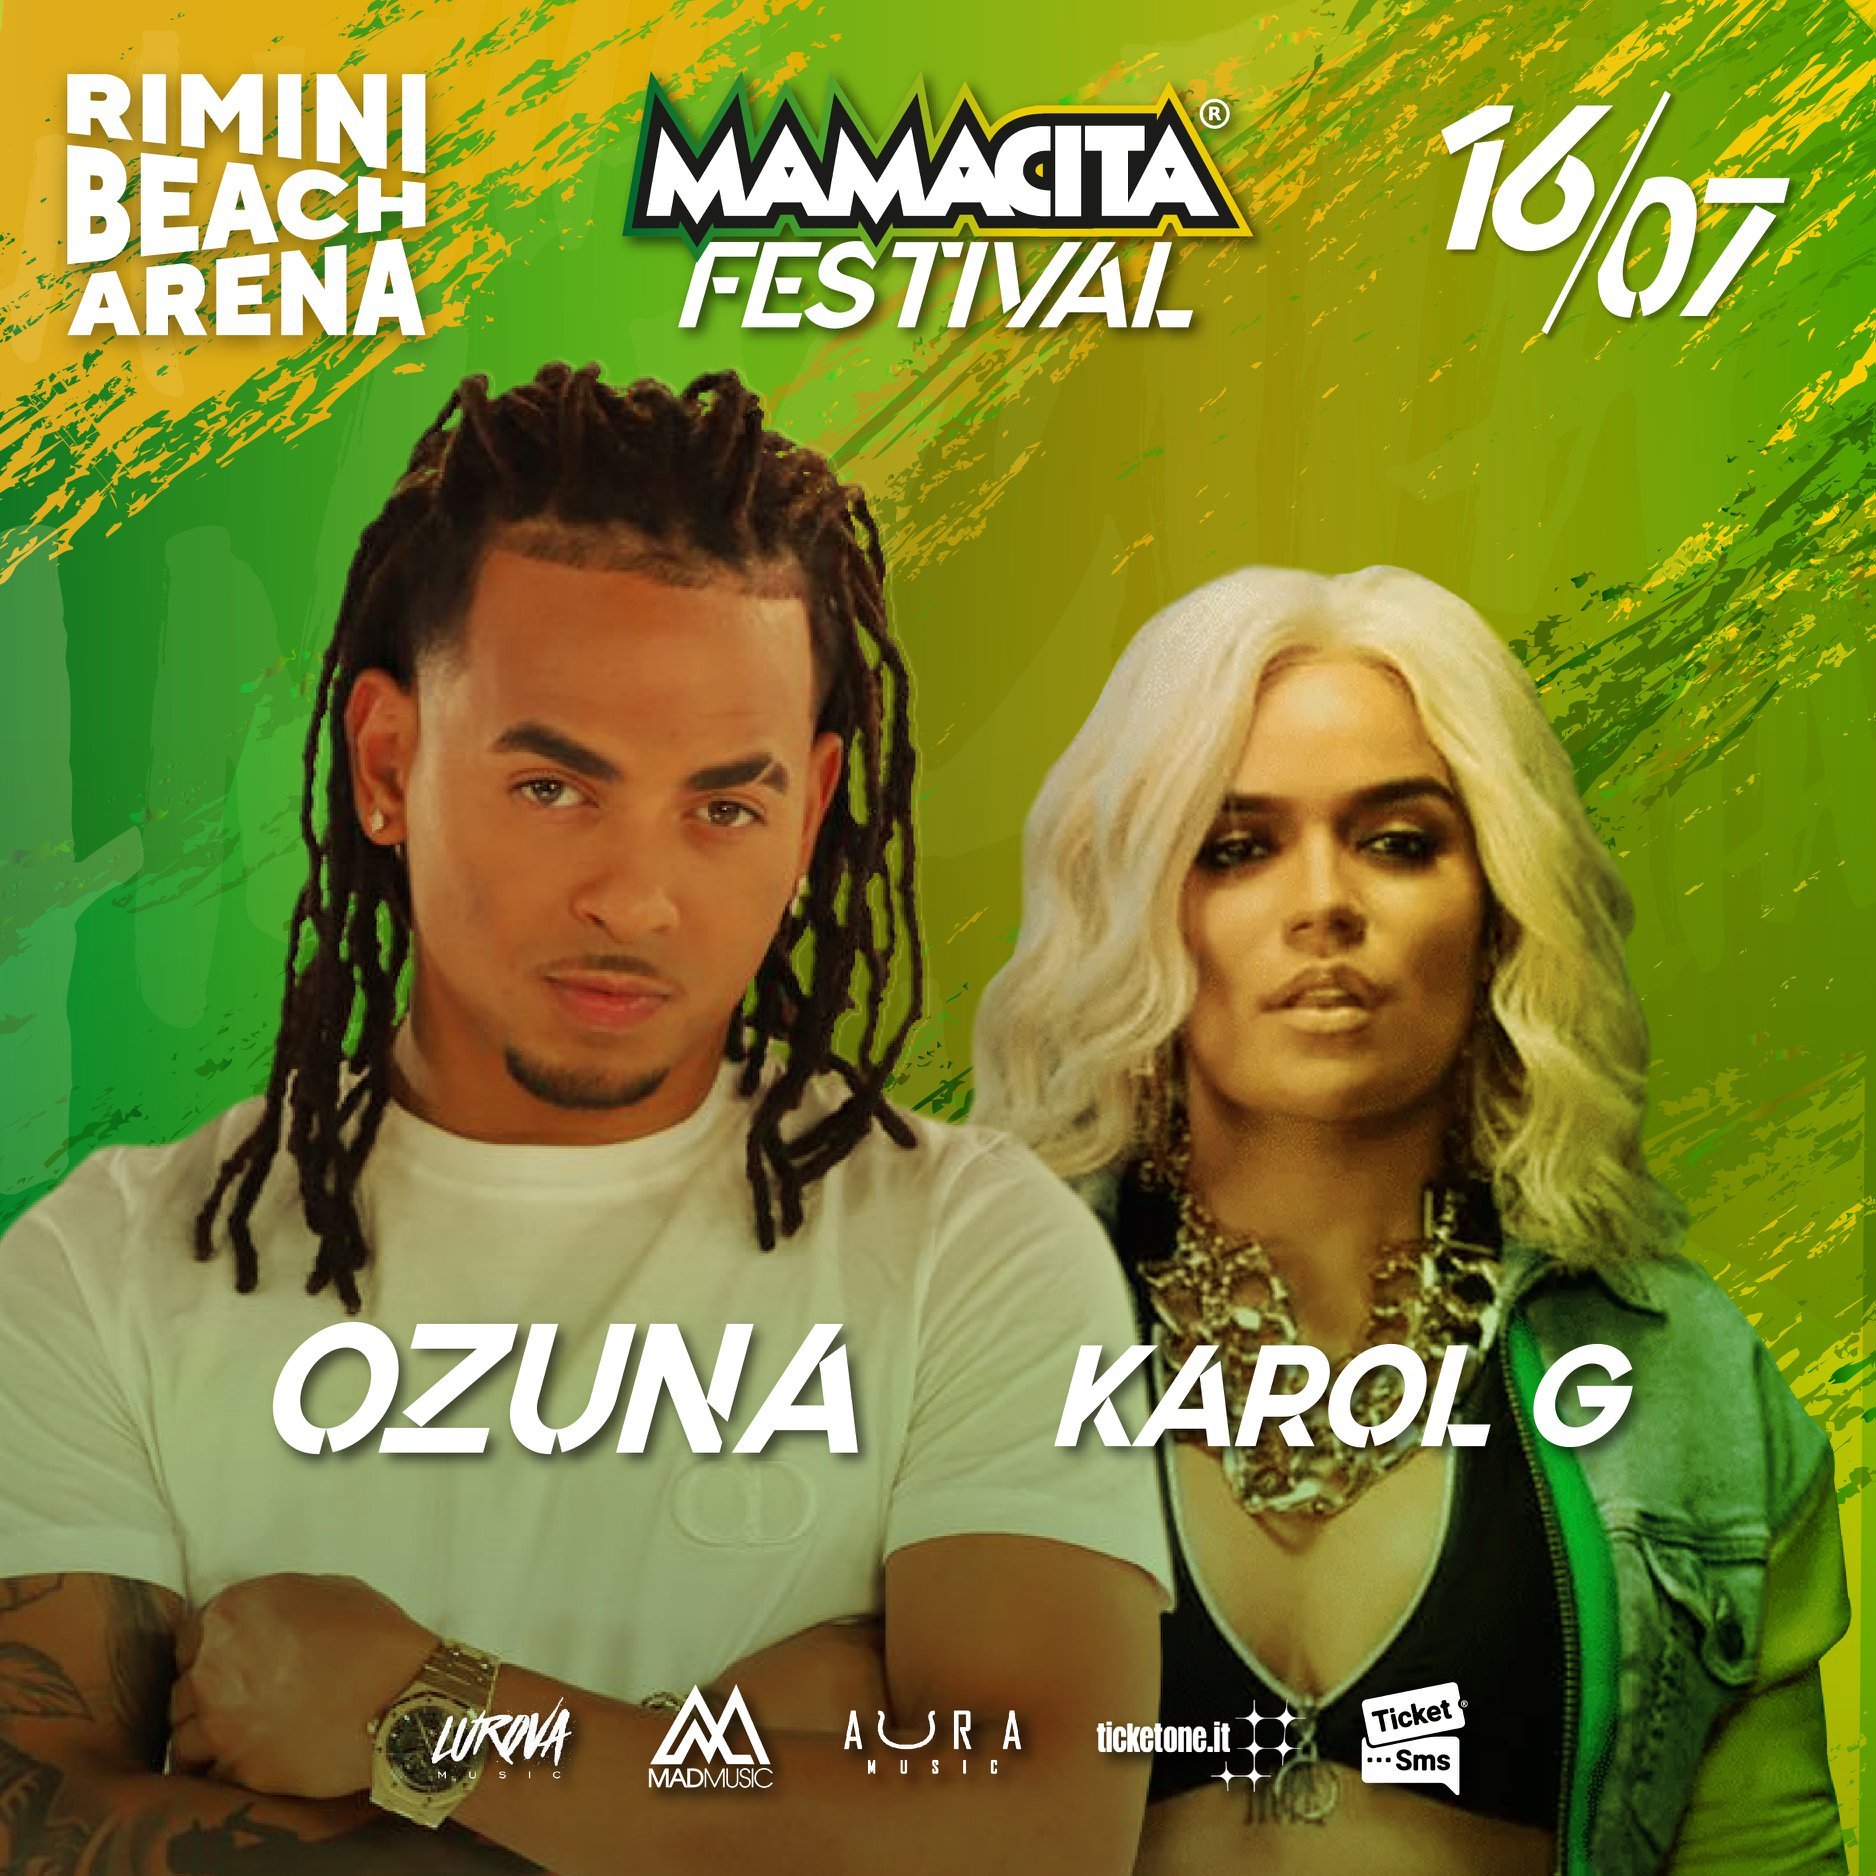 Ozuna e Karol G alla Rimini Beach Arena